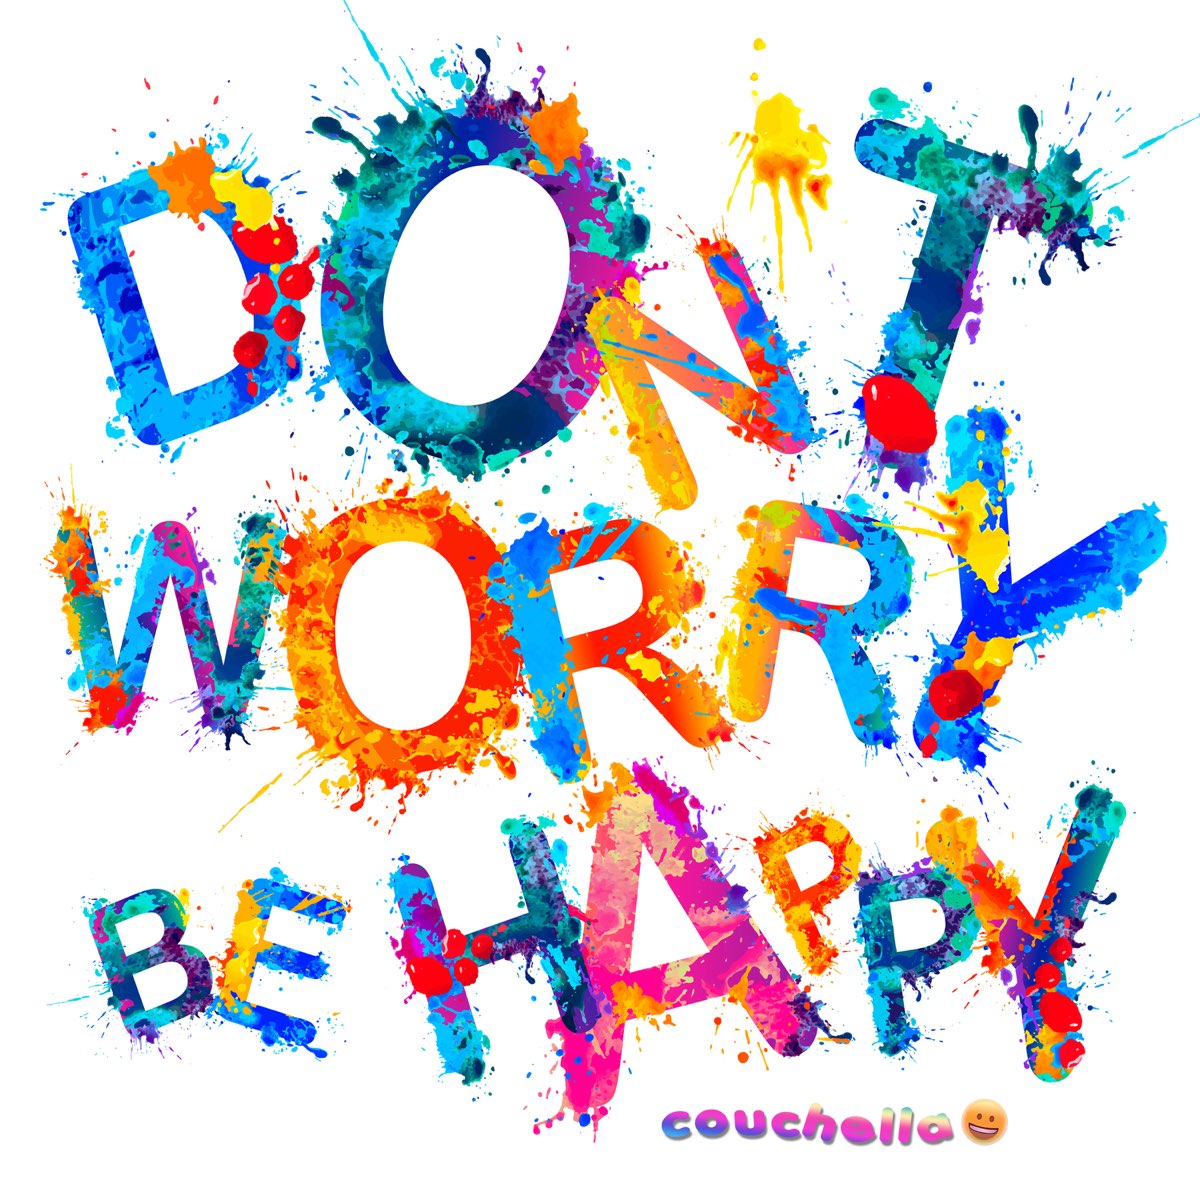 Be happy remix. Don't worry be Happy. Don't worry be Happy аватарка на. Don't worry be Happy на черном фоне. Don't worry be Happy album.